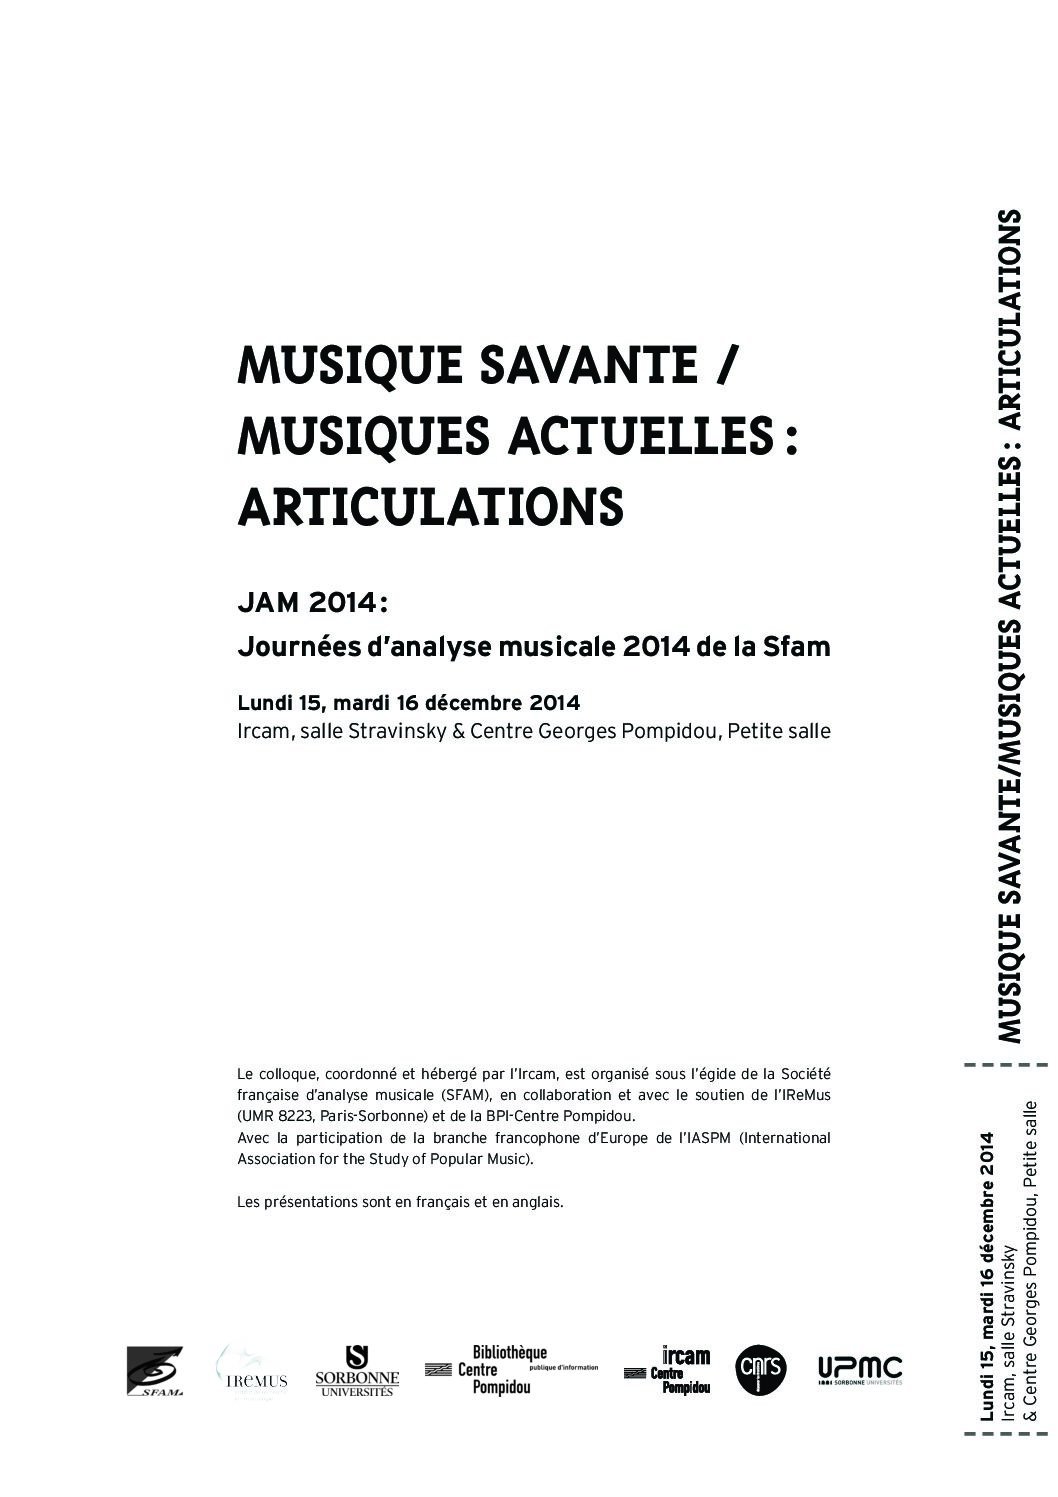 Lire la suite à propos de l’article JAM 2014 — Musique savante / musiques actuelles : articulations (Ircam / Maison de la recherche de l’Université Paris-Sorbonne)